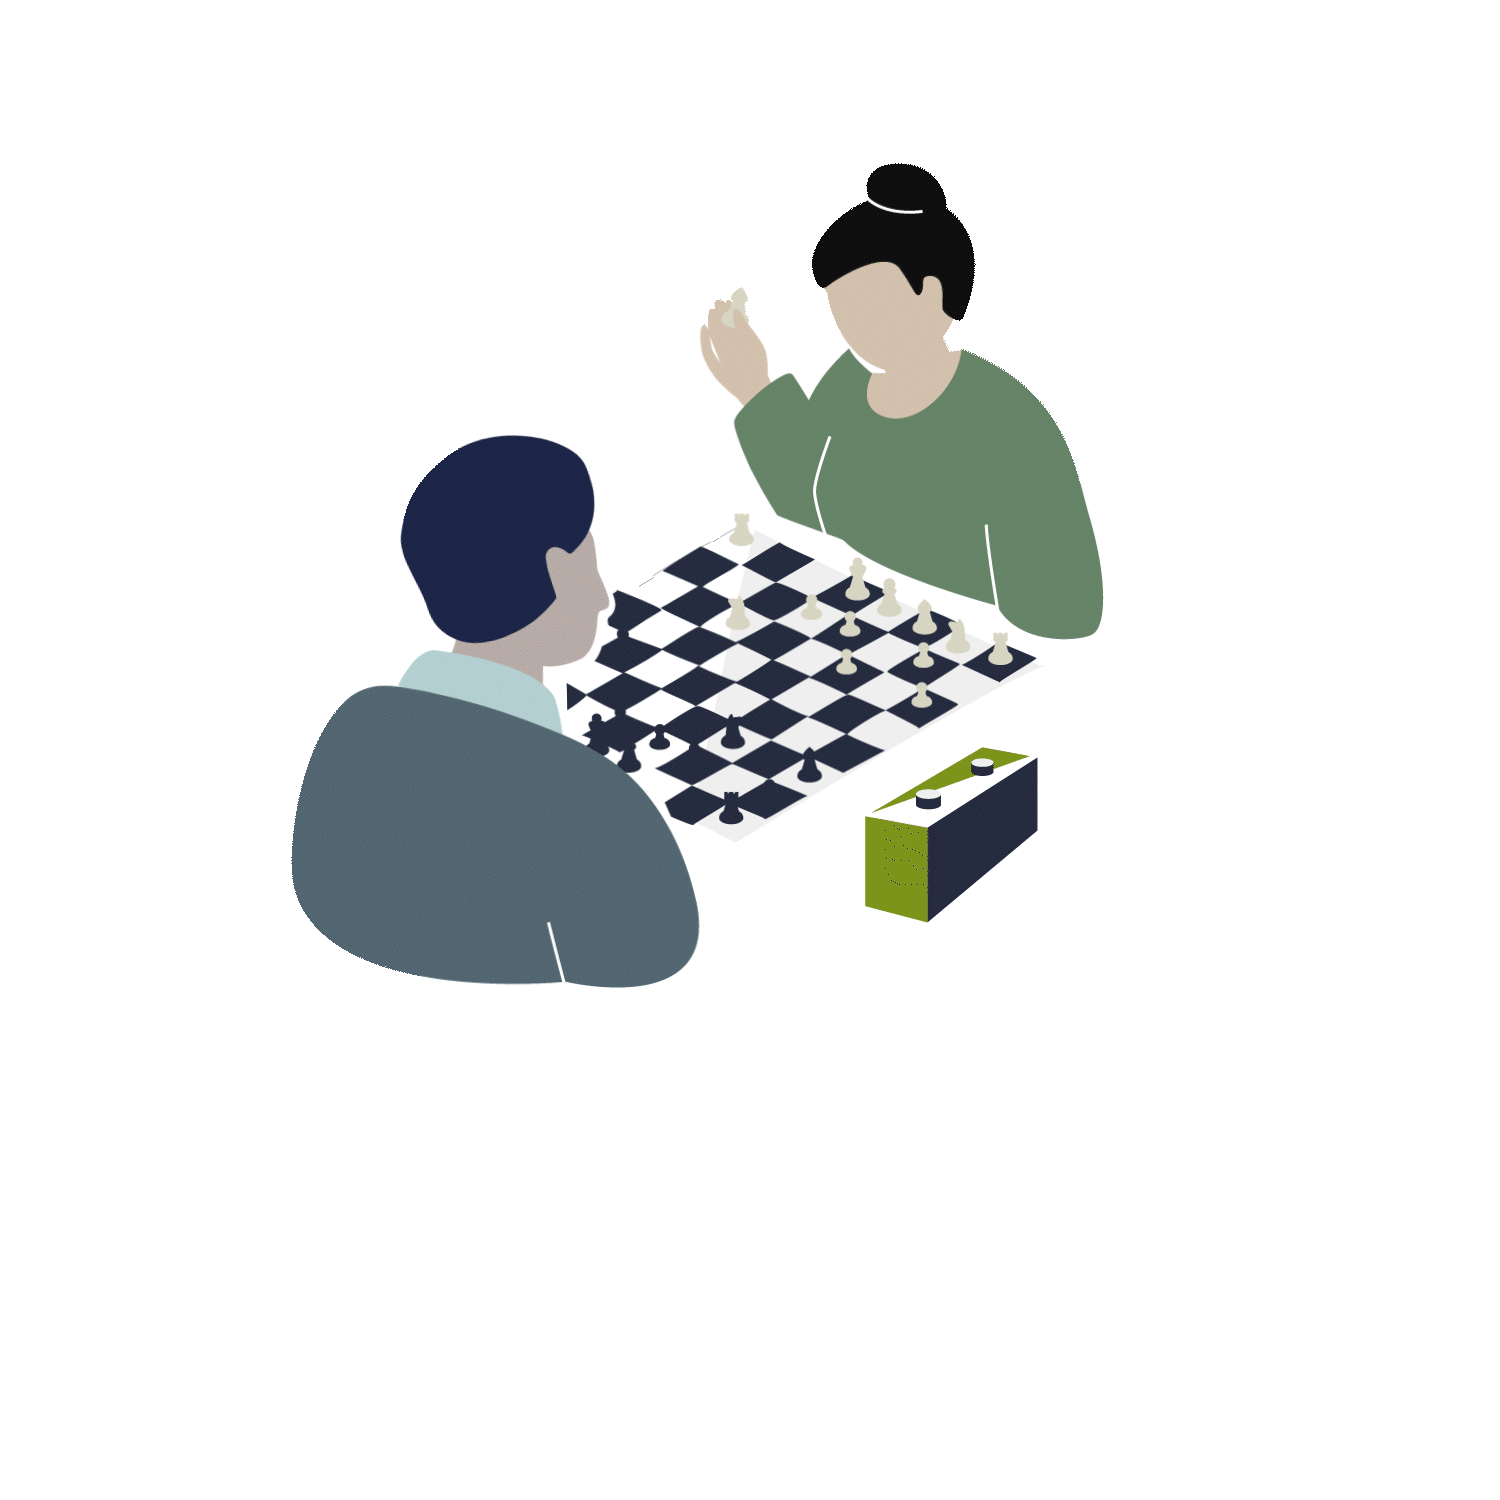 Illustration von zwei Personen die Schach spielen